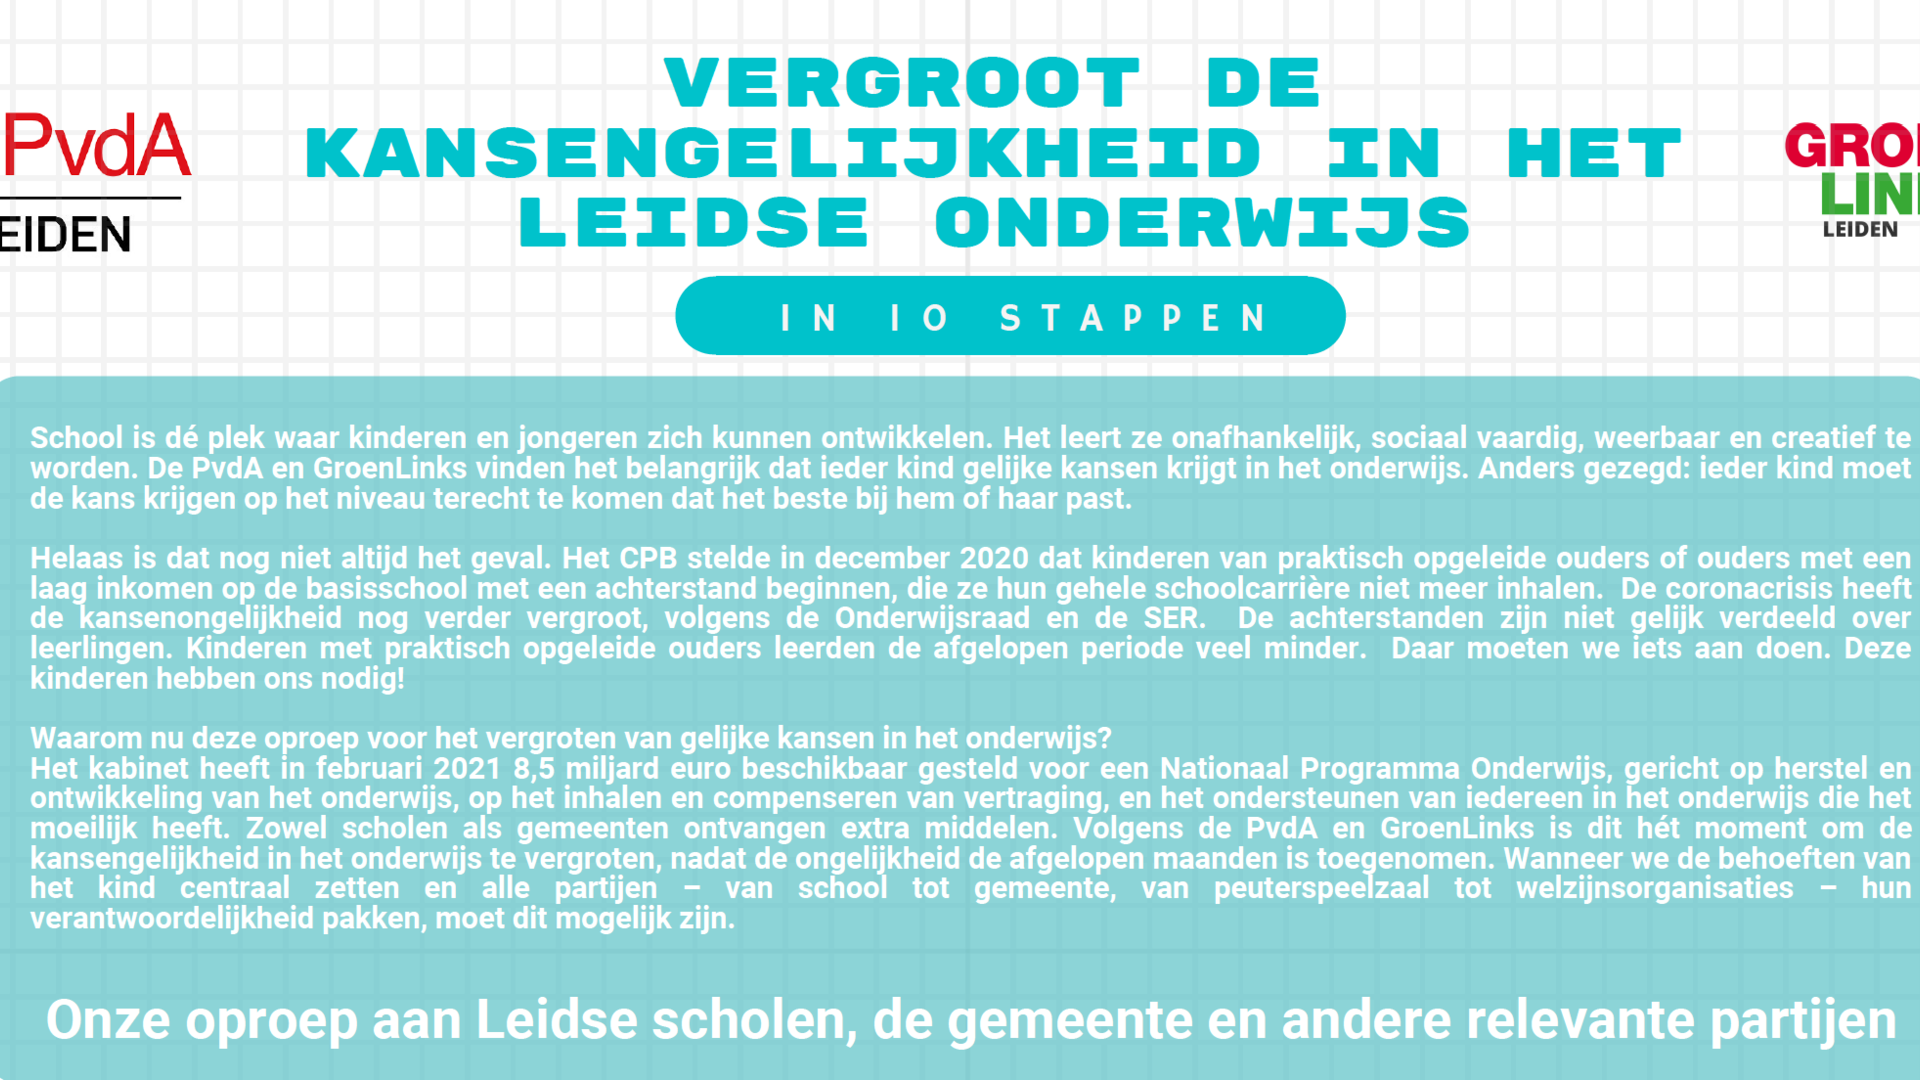 Pamflet kansengelijkheid onderwijs GroenLinks en PvdA Leiden BEELD